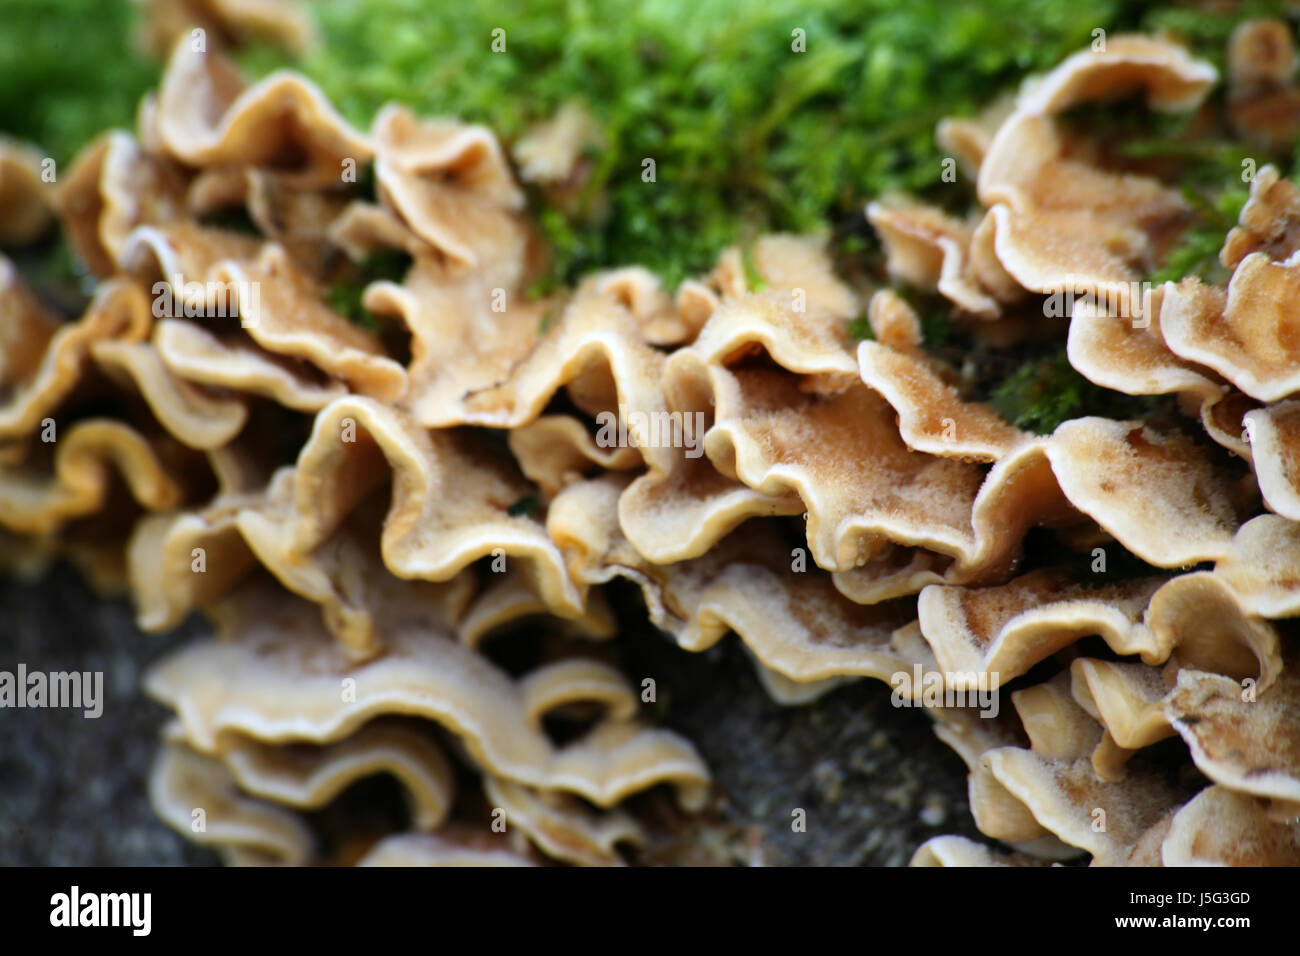 Tree trunk verde della flora contrasto frost moss funghi fungo fungo forest Foto Stock